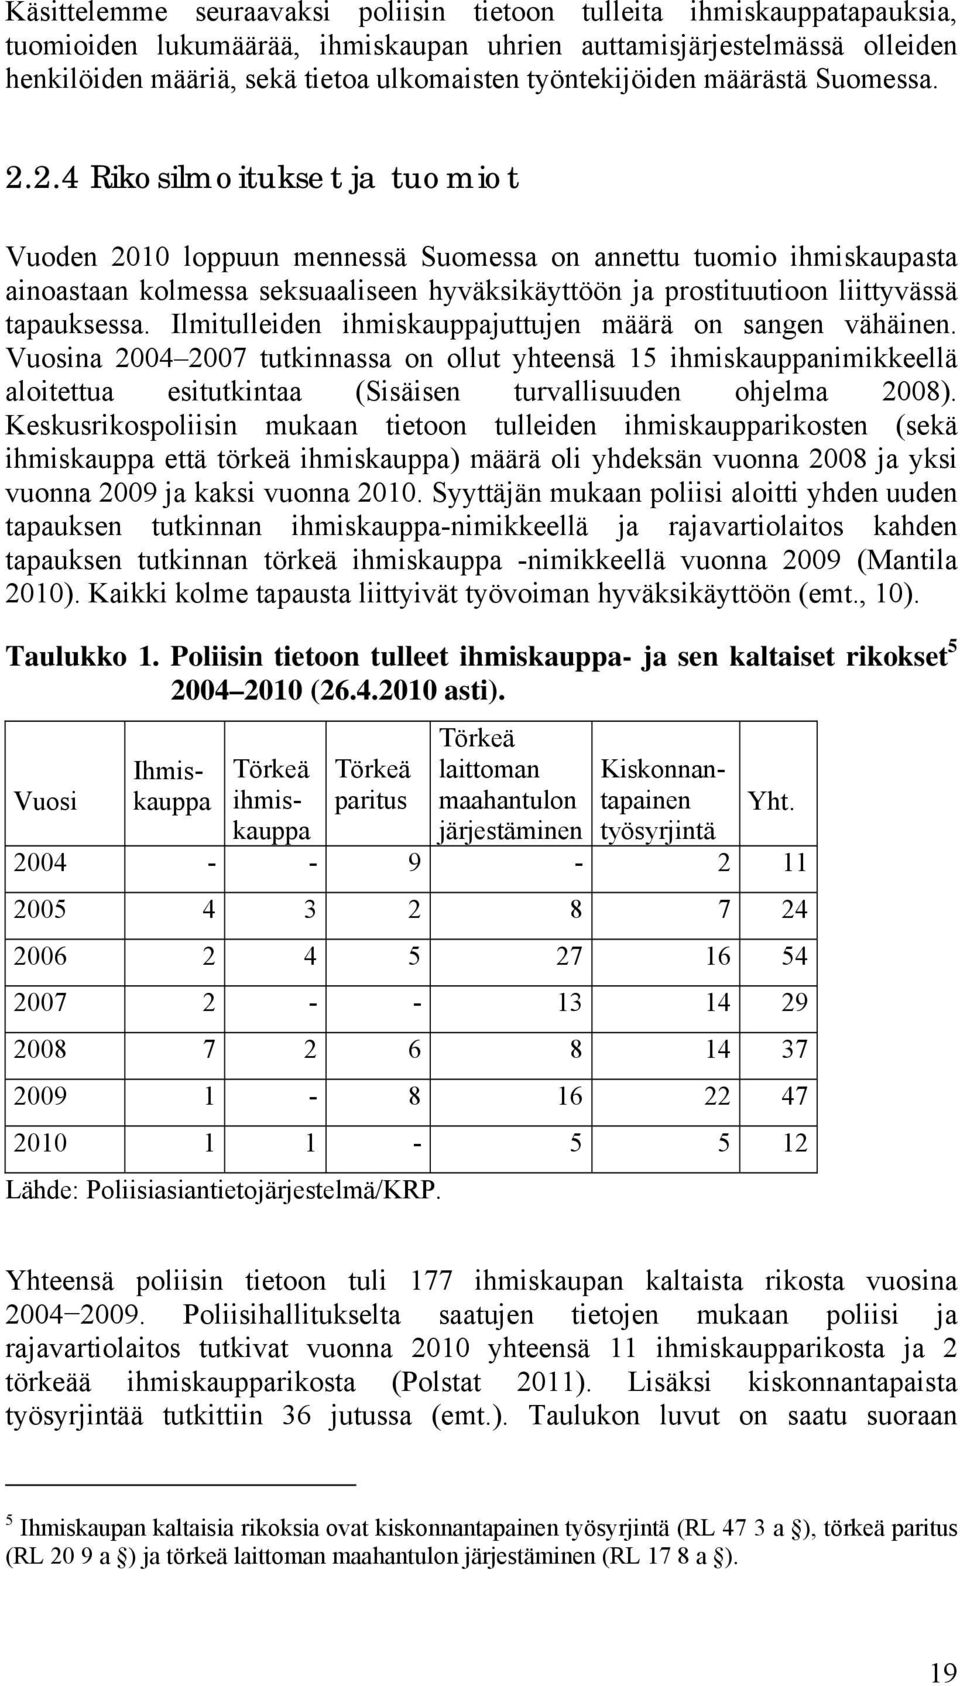 2.4 Rikosilmoitukset ja tuomiot Vuoden 2010 loppuun mennessä Suomessa on annettu tuomio ihmiskaupasta ainoastaan kolmessa seksuaaliseen hyväksikäyttöön ja prostituutioon liittyvässä tapauksessa.